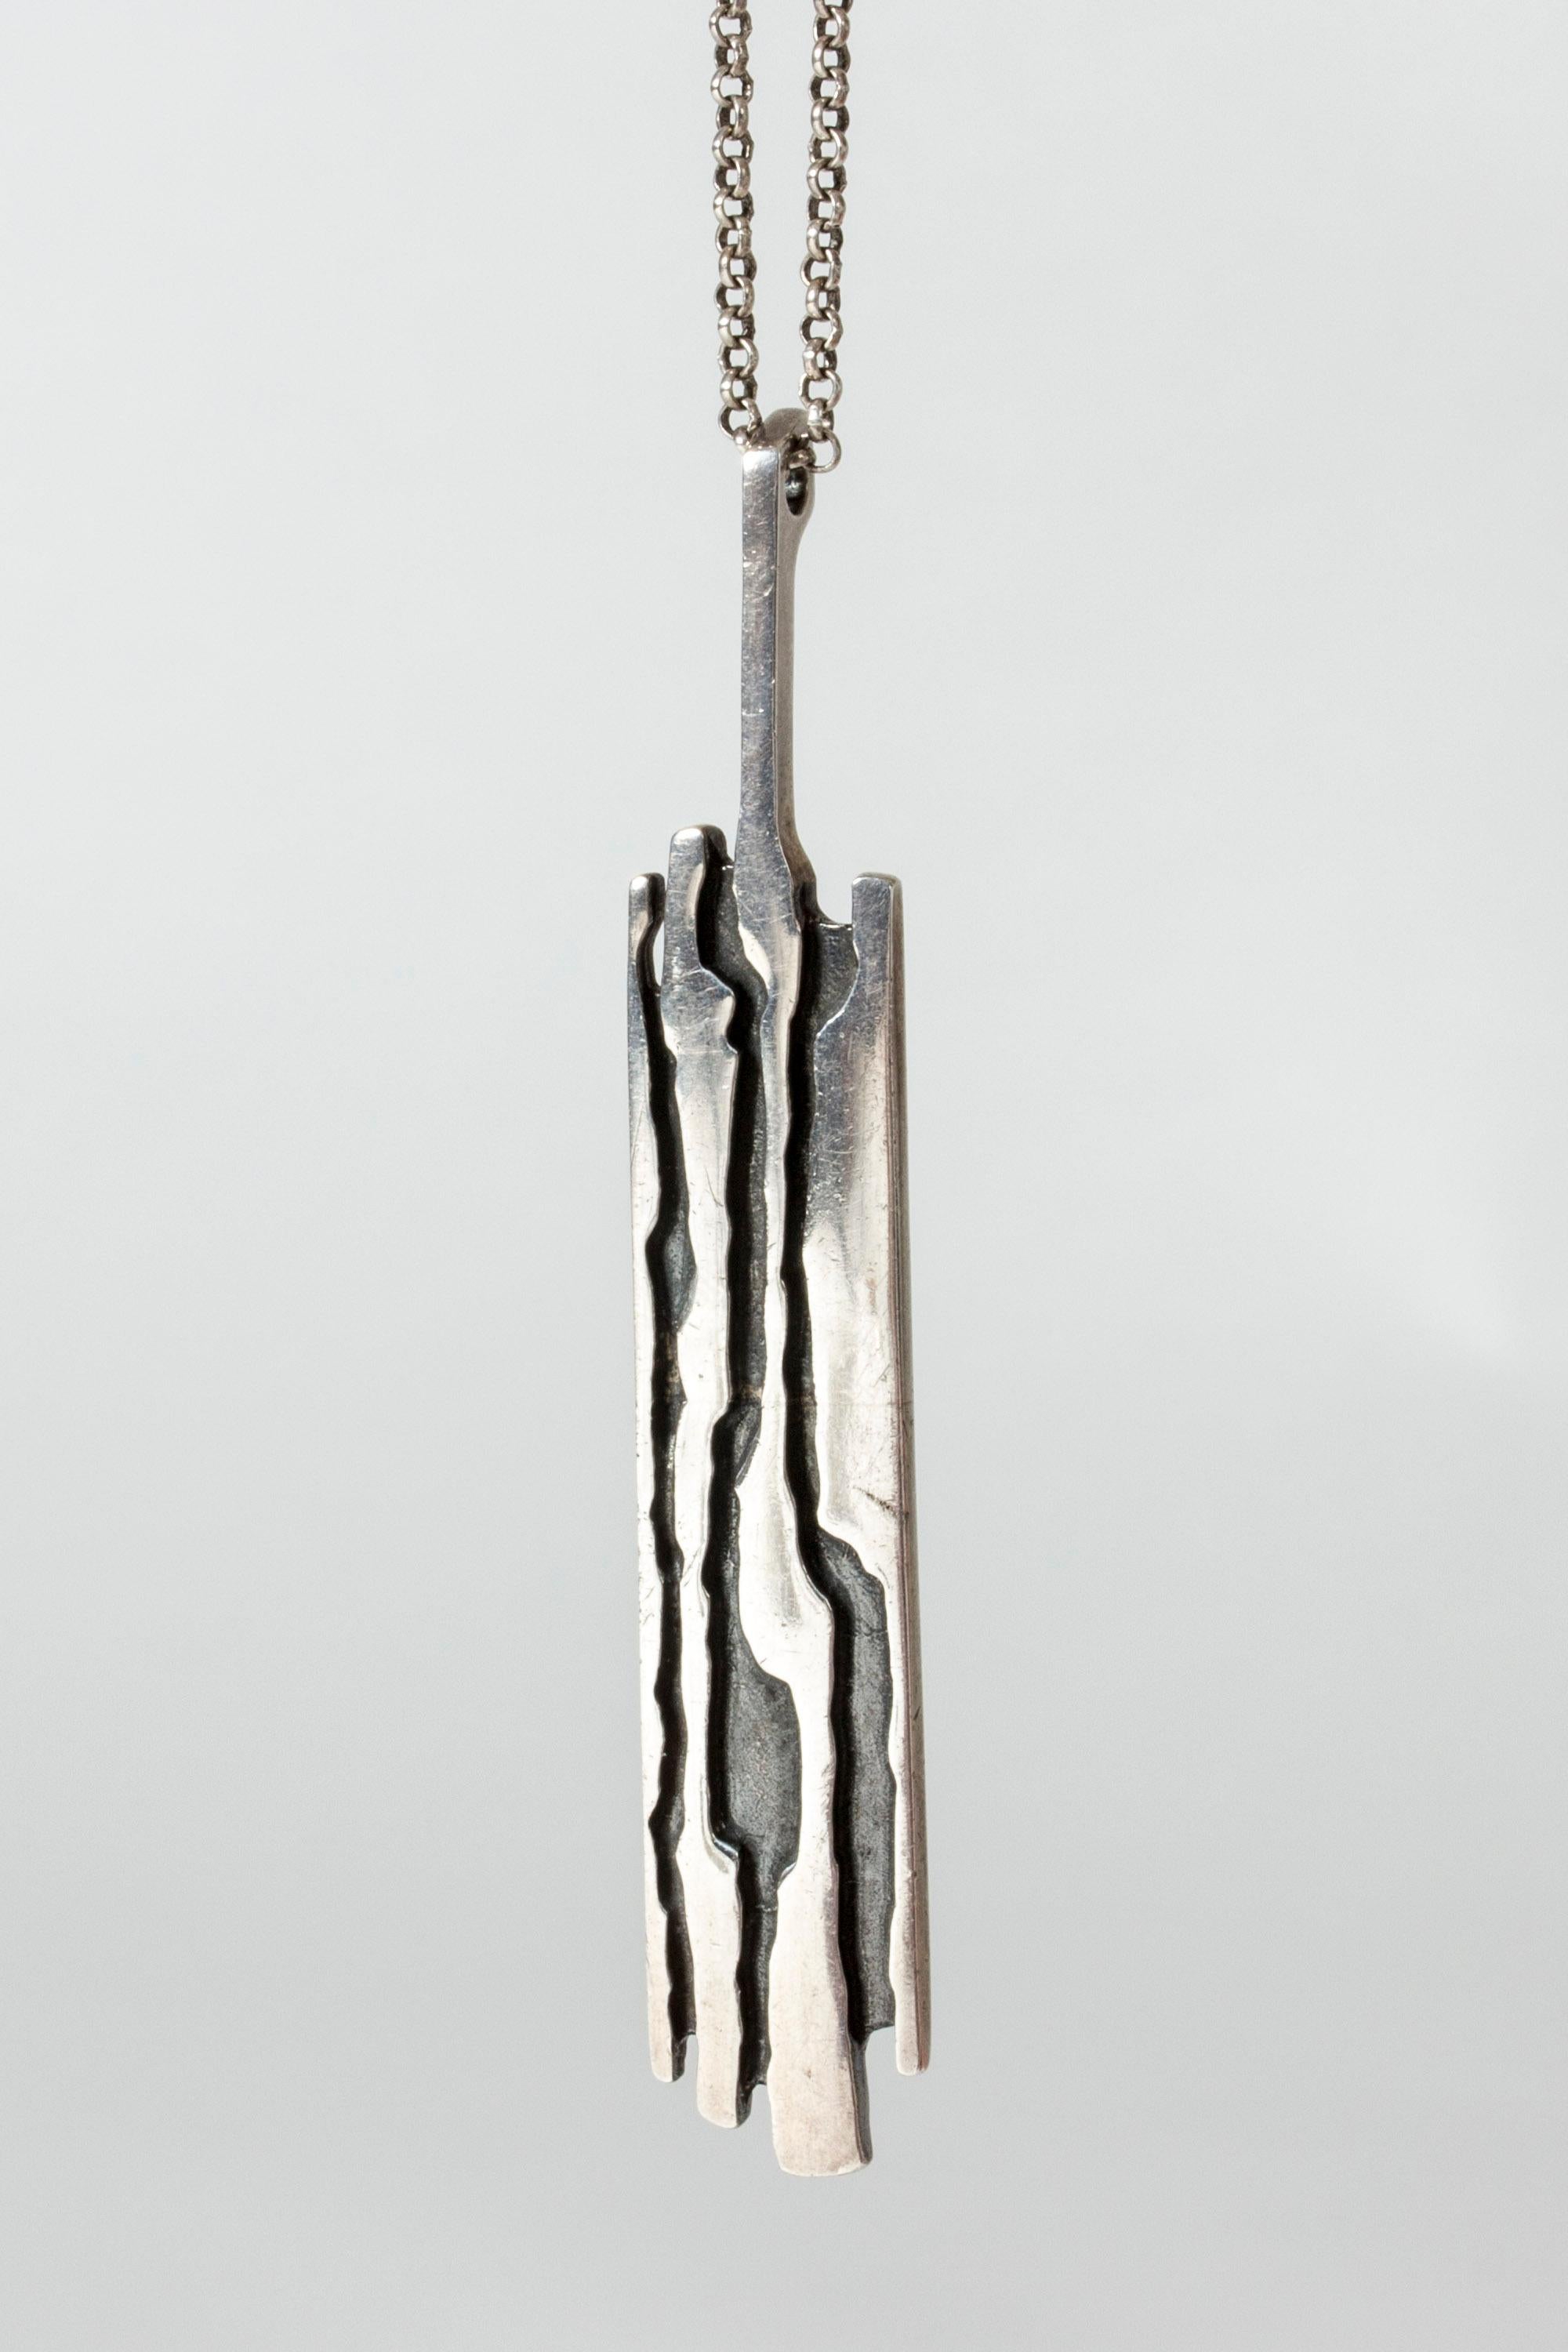 Modernist Silver Pendant from Niels Erik From, Denmark, 1960